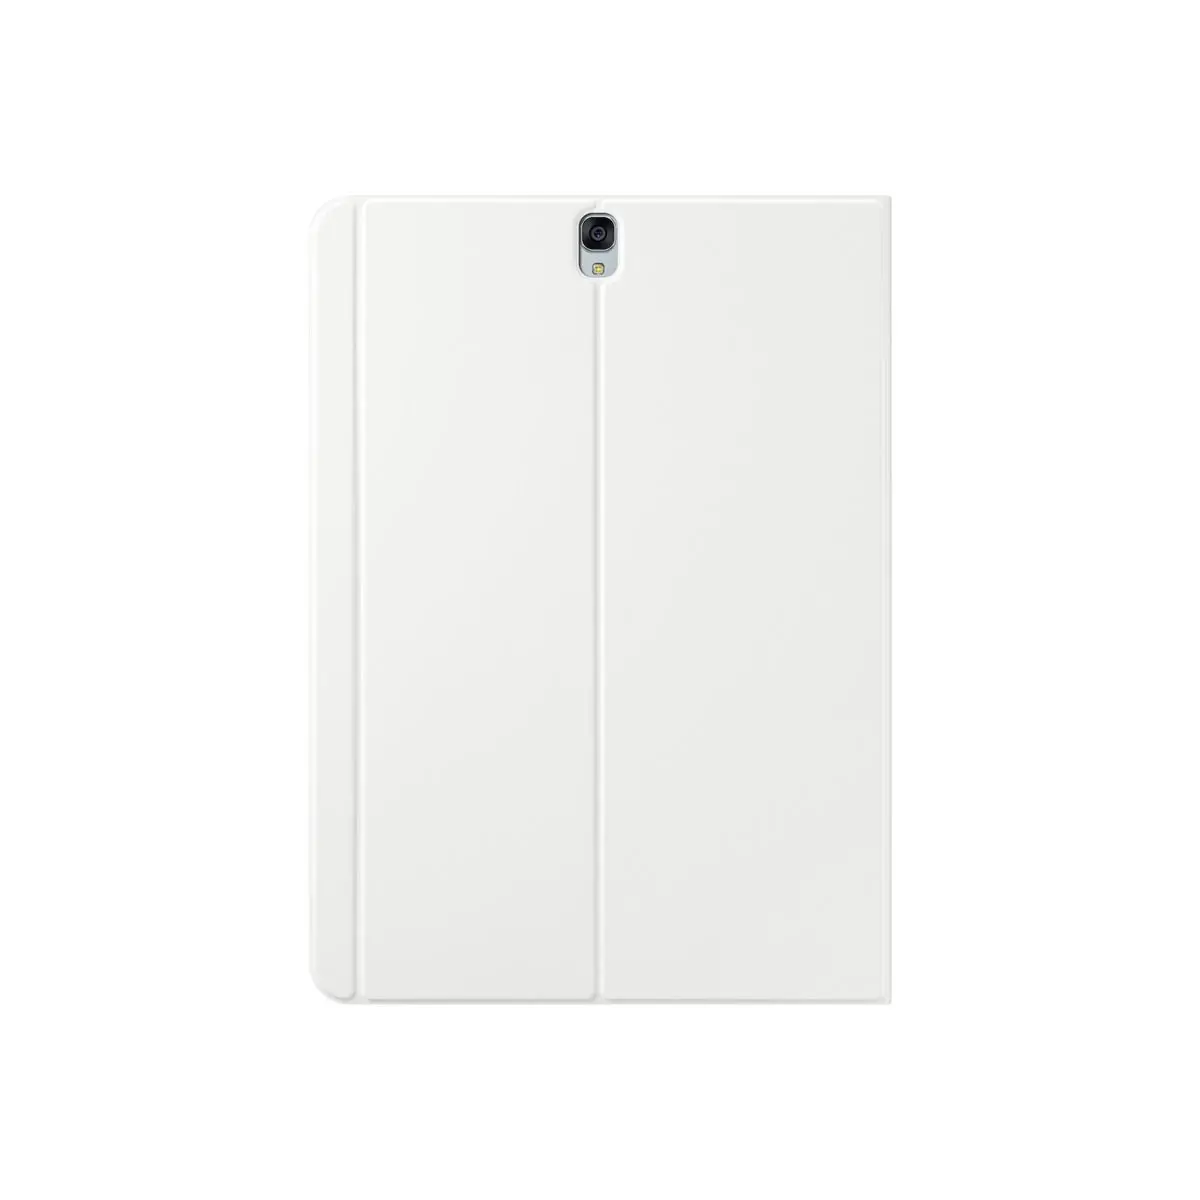 SAMSUNG Book Cover blanc pour TAB S3 photo du produit